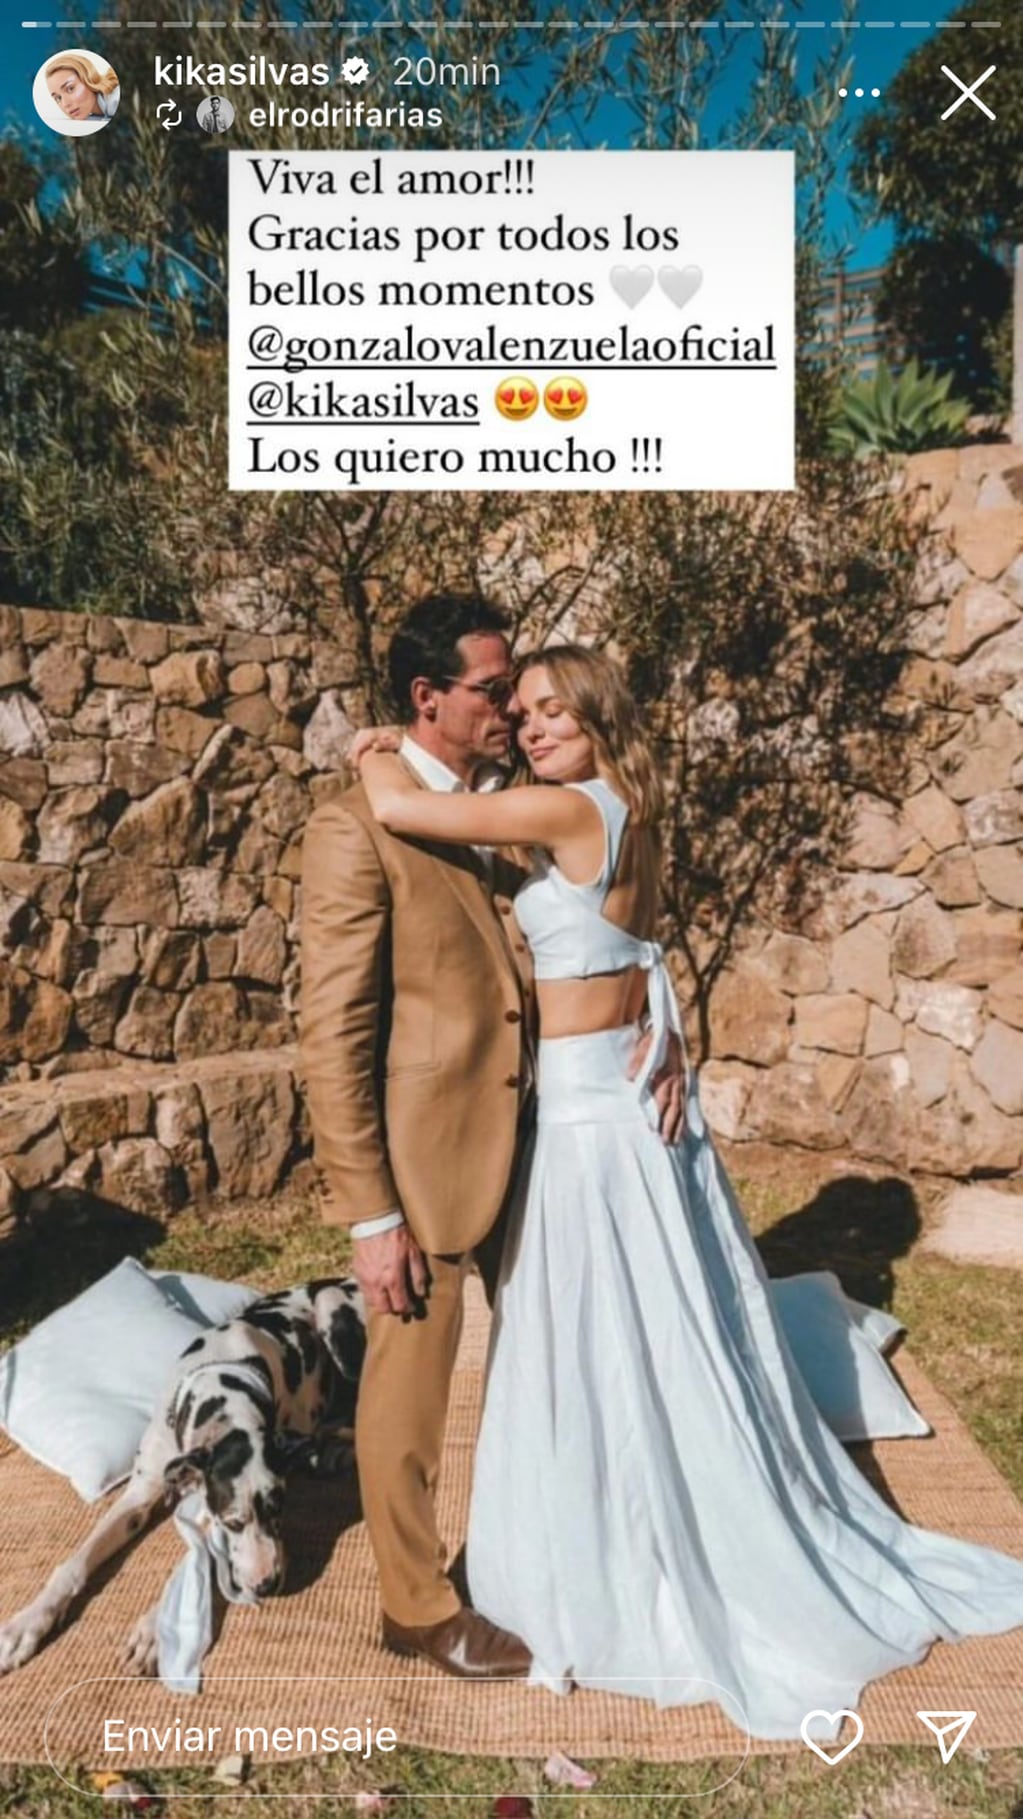 Así fue la especial boda de Kika Silva y Gonzalo Valenzuela